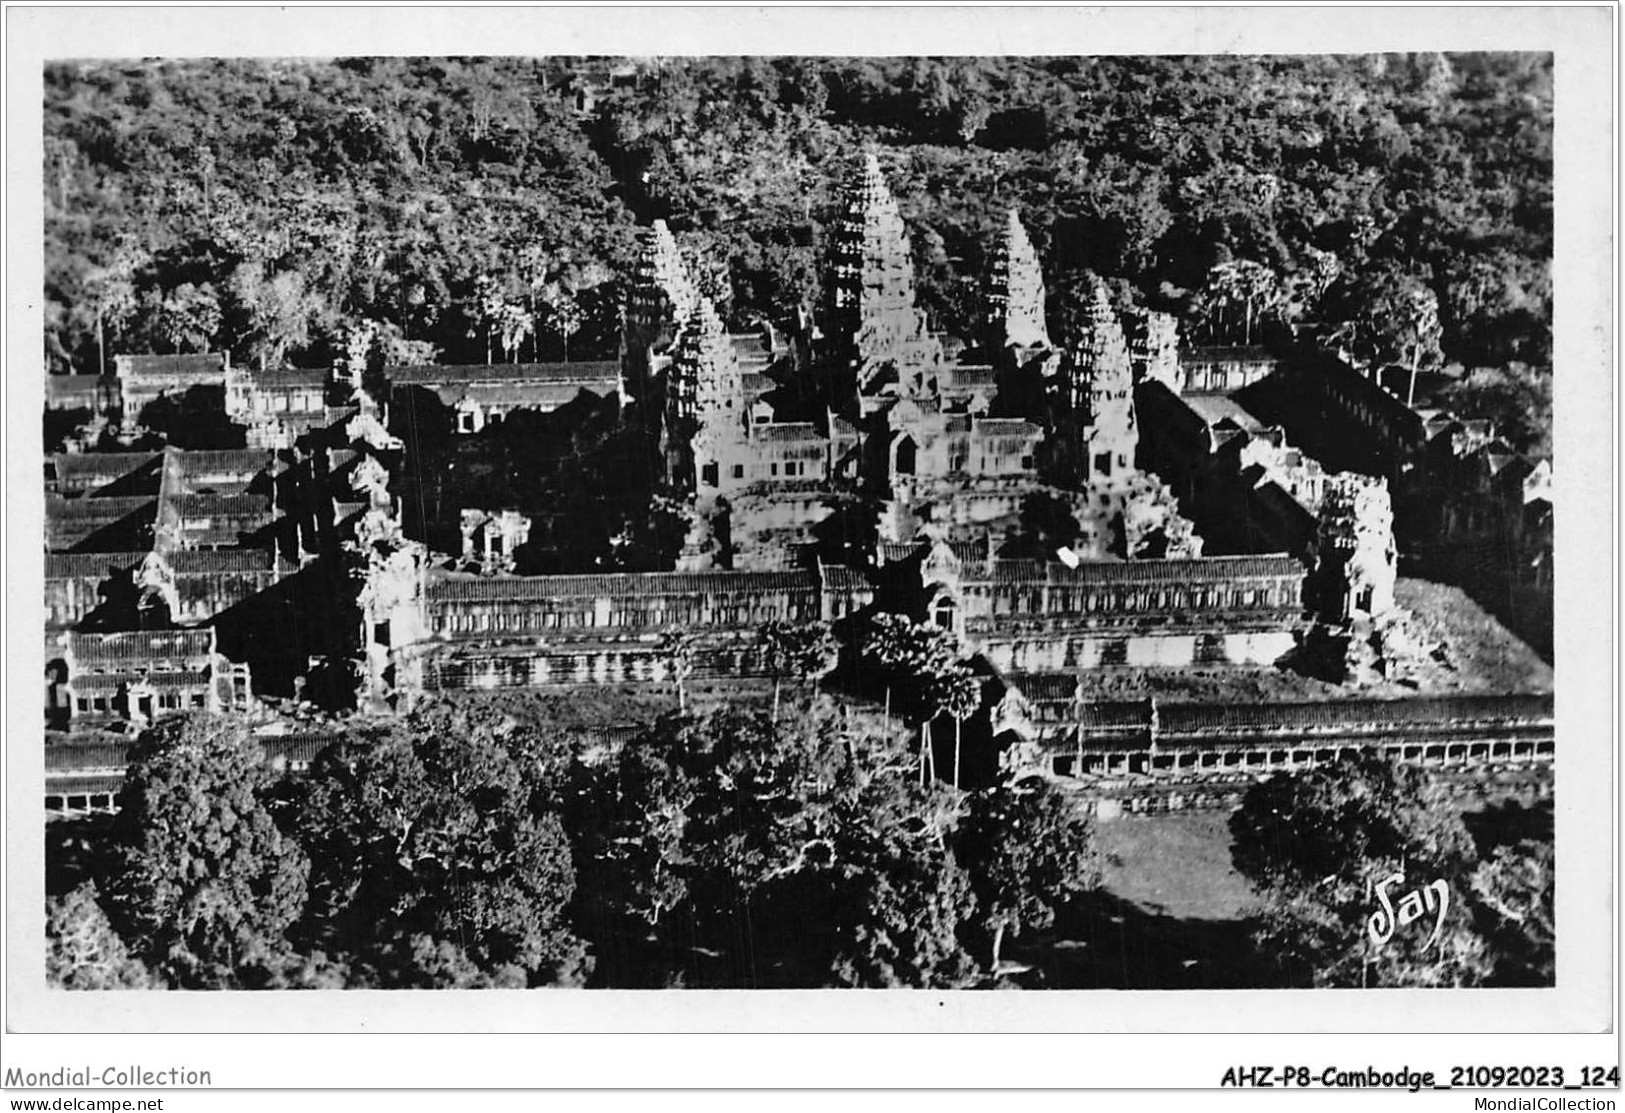 AHZP8-CAMBODGE-0745 - ANGKOR-VAT - LE TEMPLE - LES SPLENDEURS DU 12è SIECLE DE L'ART KHMER - Cambodia